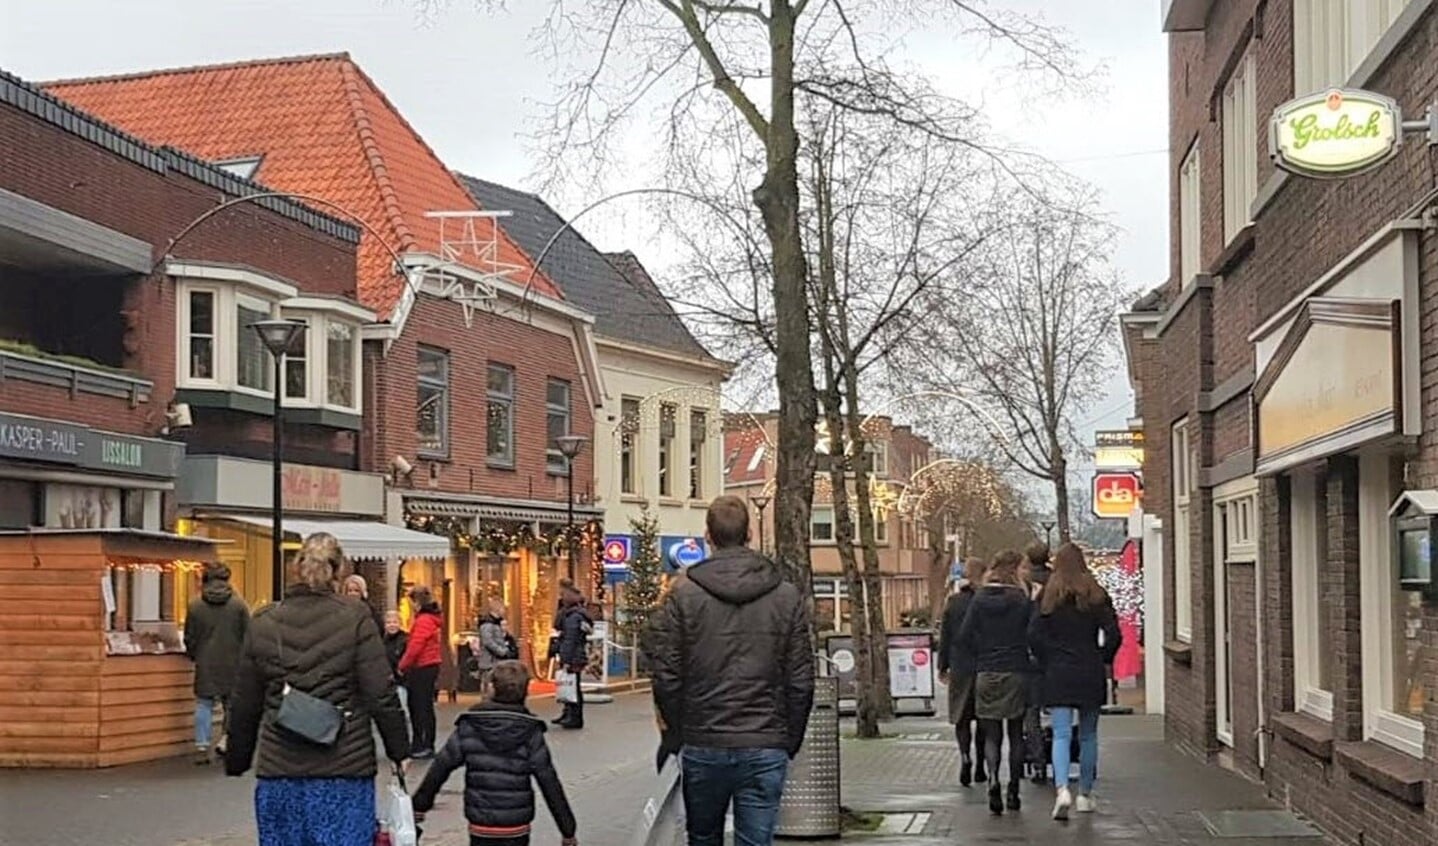 Winkelstraat in Aalten. Foto: Archief Achterhoek Nieuws, PR